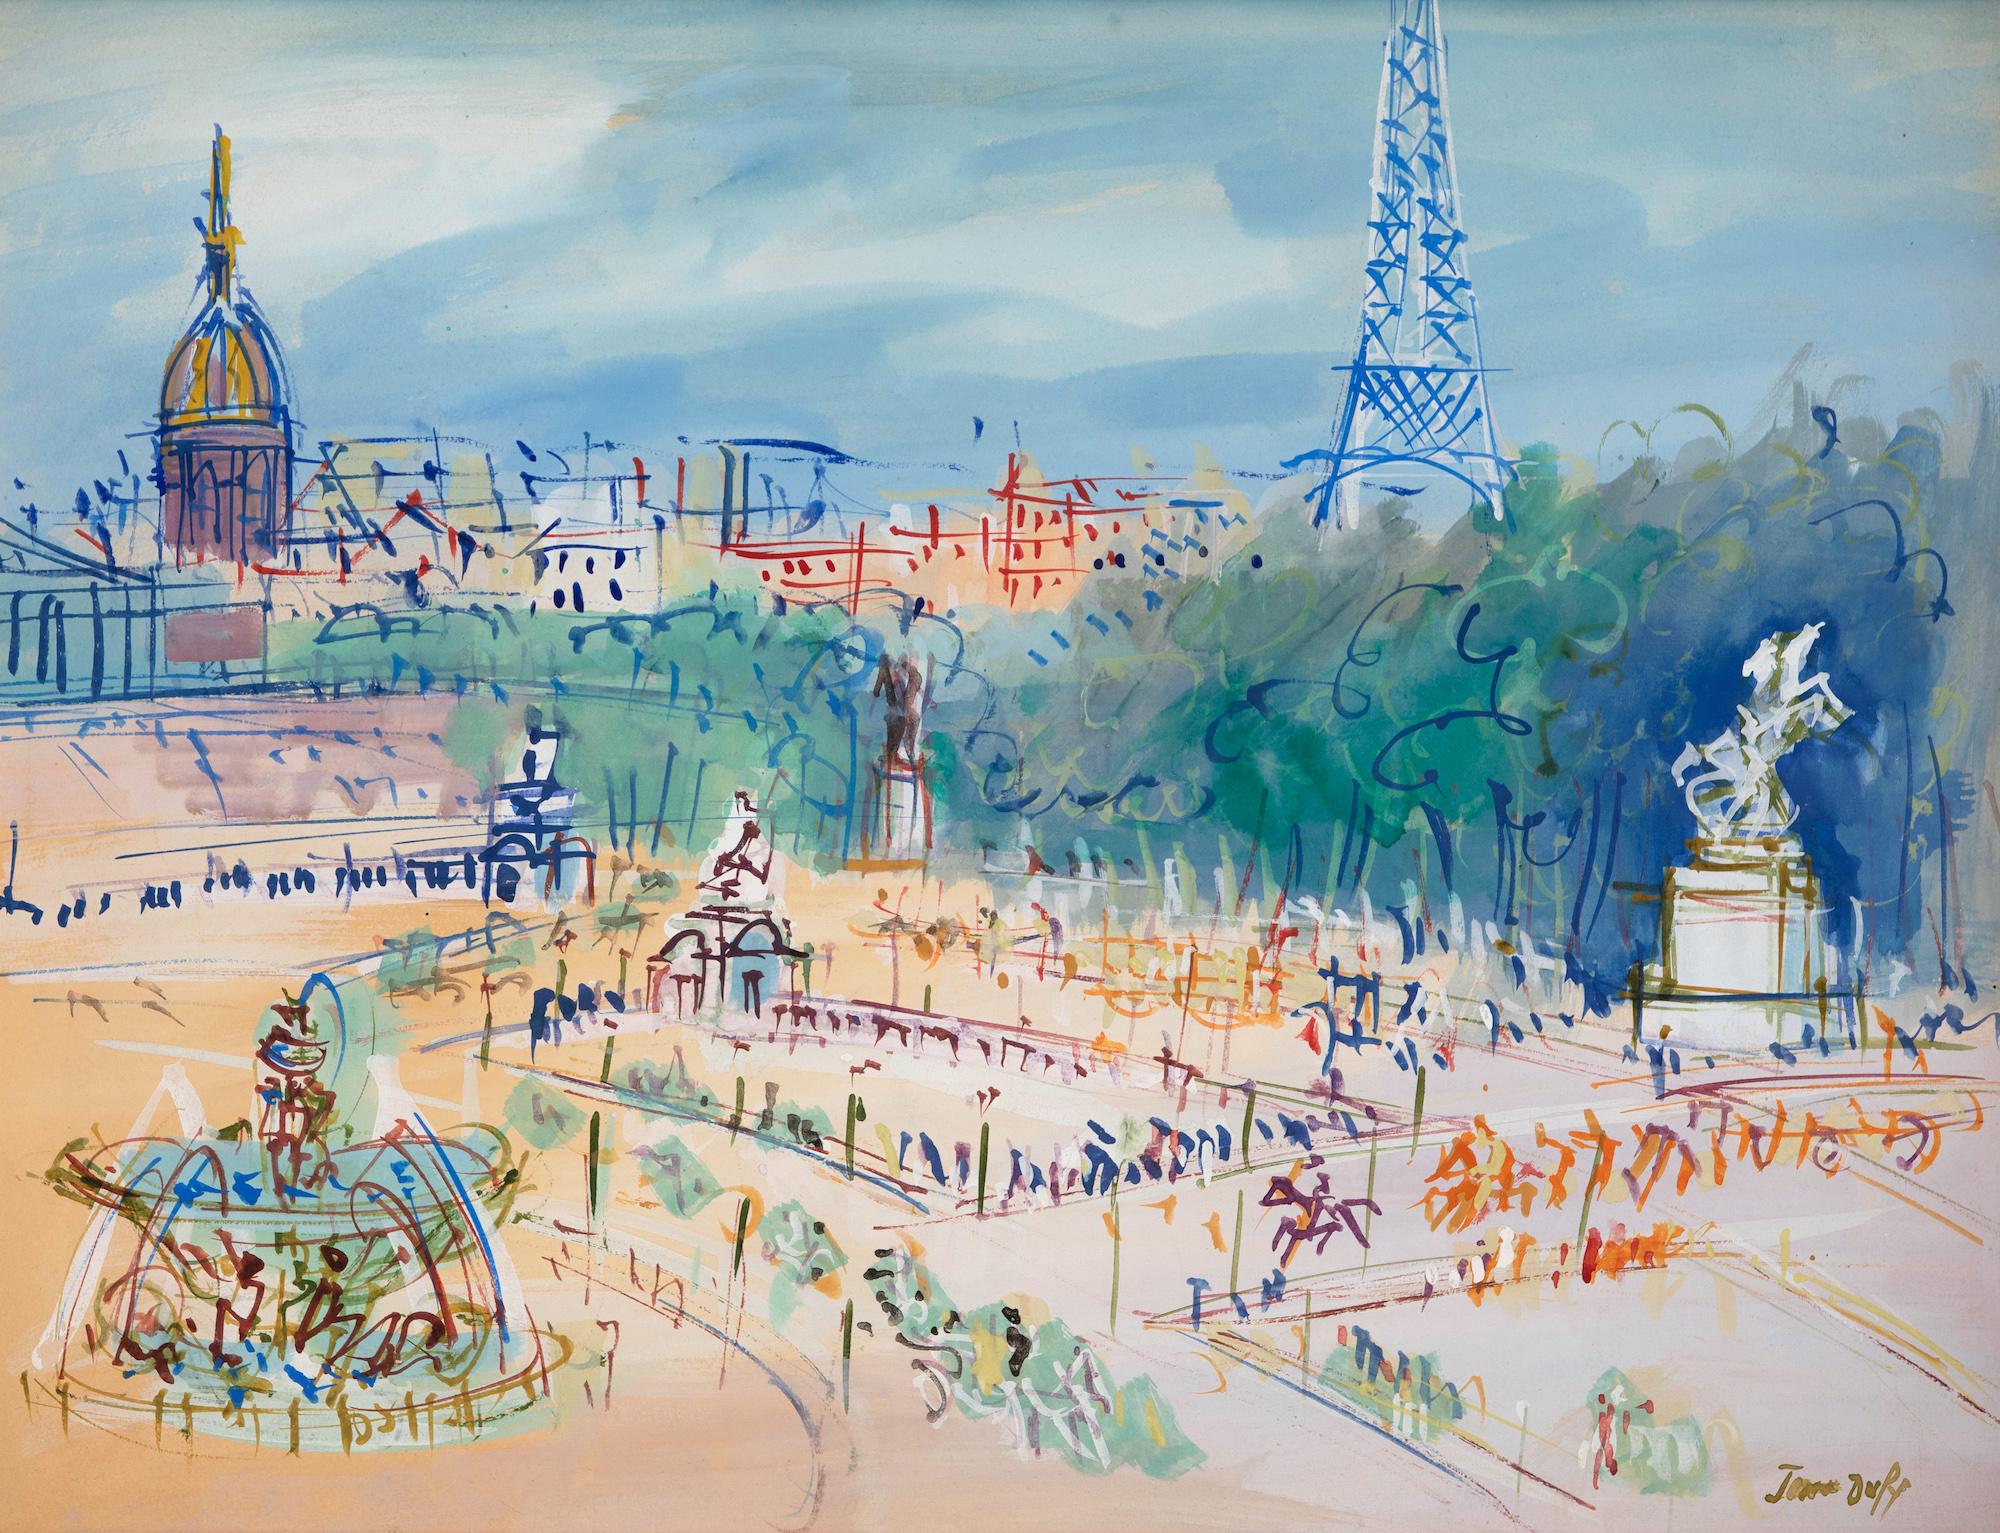 Place de la Concorde von Jean Dufy – Mixed-Media-Gemälde auf Papier, Pariser Szene